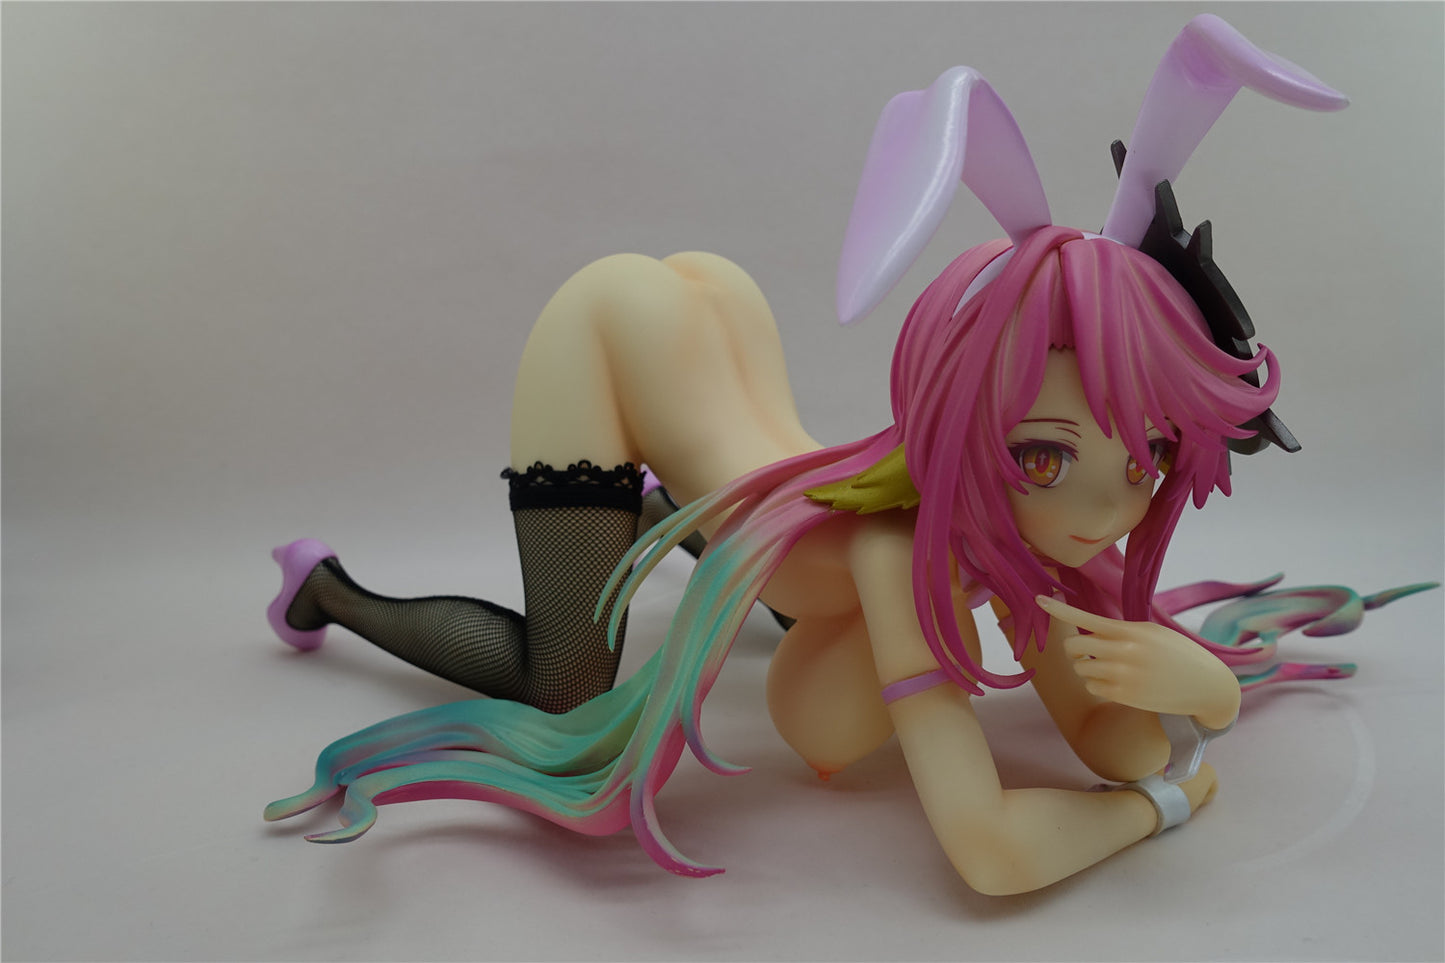 No Game No Life - Jibril bunny 1/4 naked anime girl figure collectible action figures